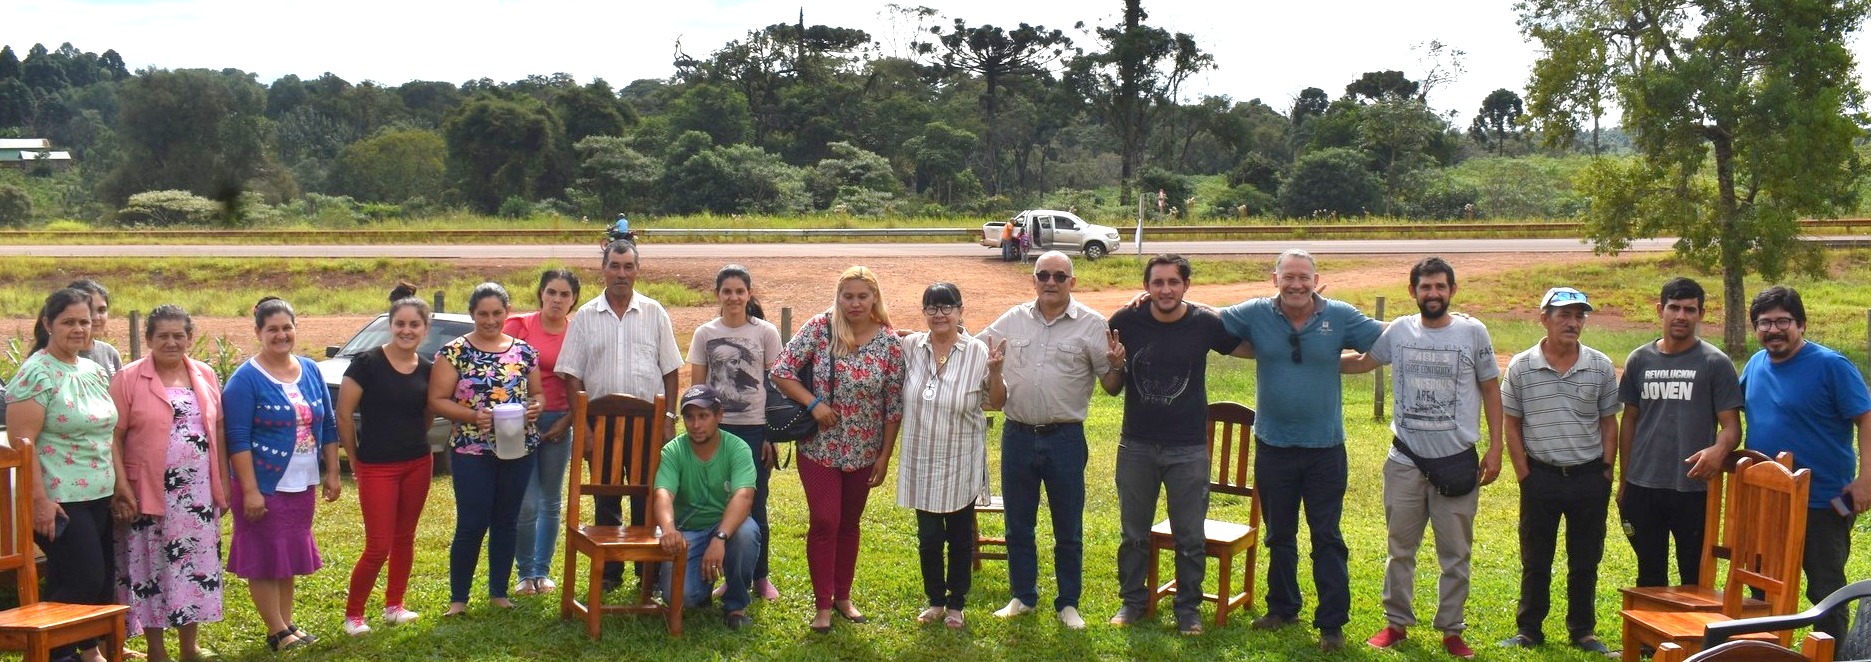 Candidatos del Frente Amplio en un encuentro con trabajadores de Cooperativa Agropecuaria de San Pedro imagen-1